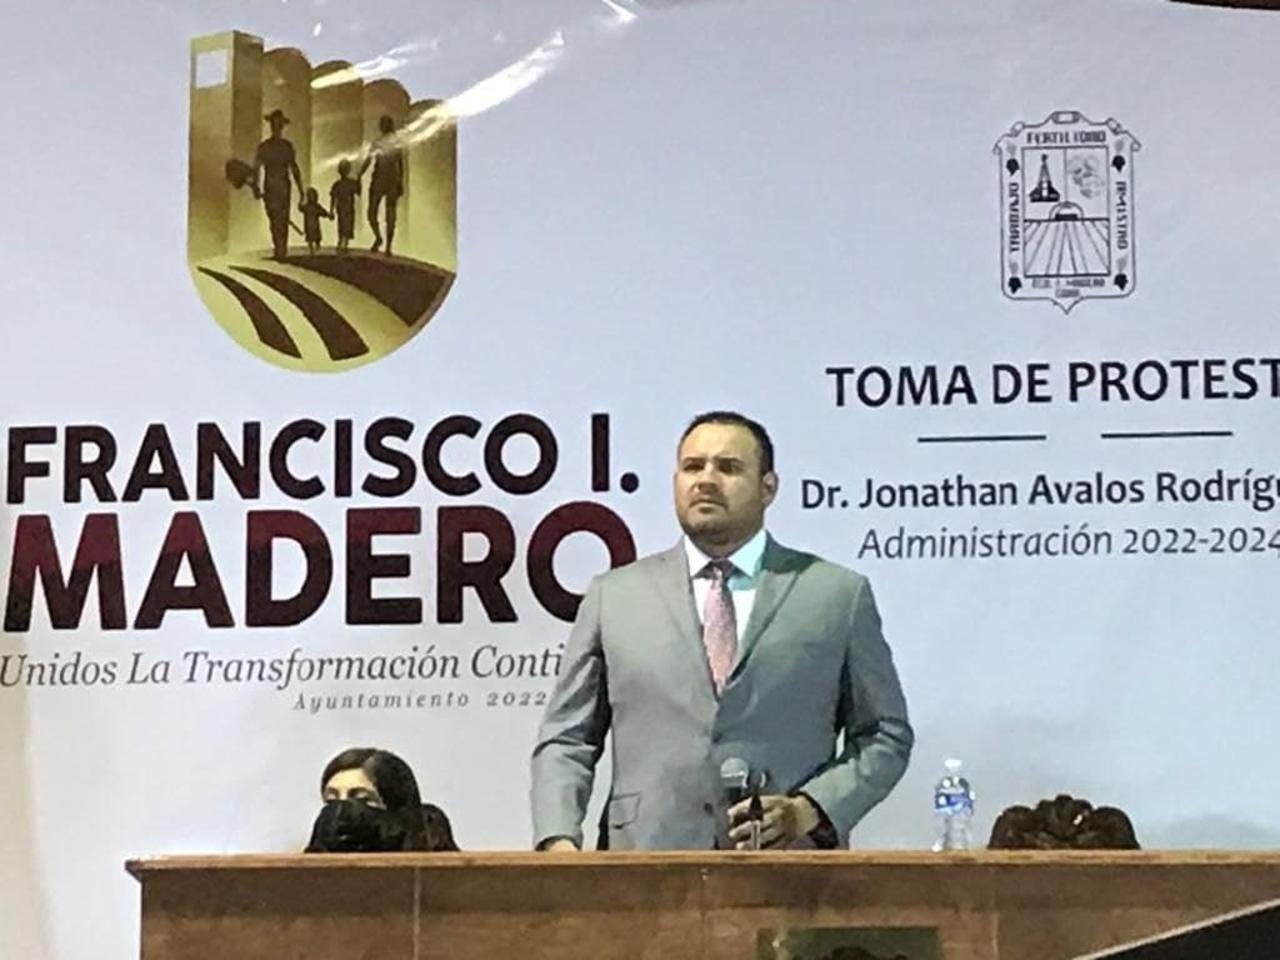 Seguiremos haciendo historia: alcalde de Madero al tomar protesta par segundo mandato